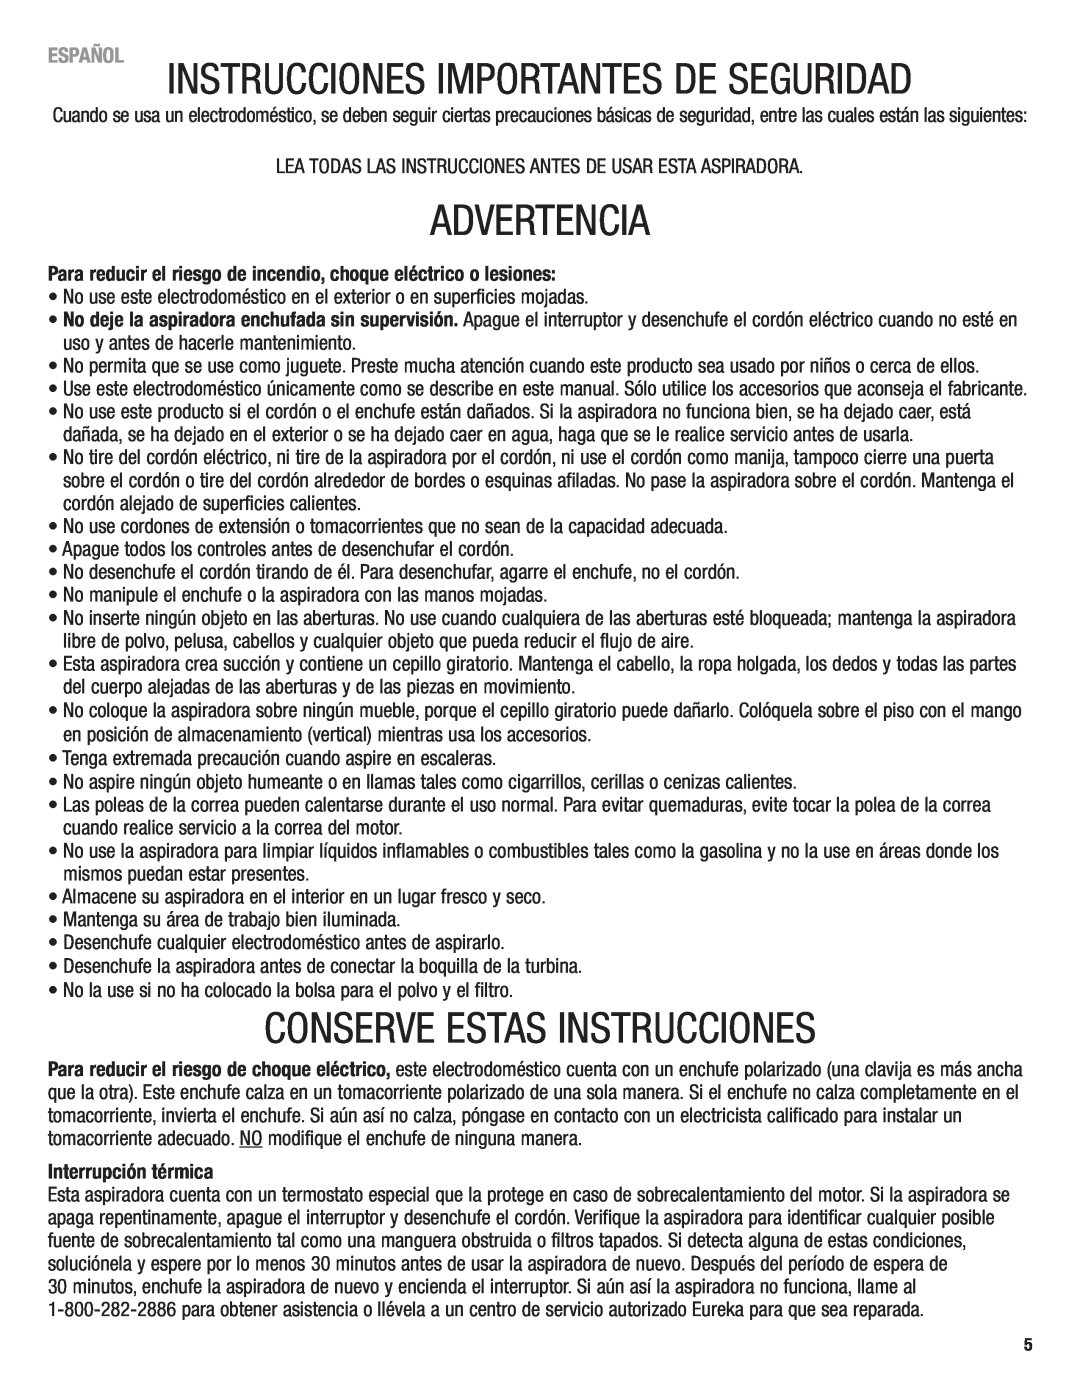 Eureka 4750 manual Advertencia, Conserve Estas Instrucciones, Español, Interrupción térmica 